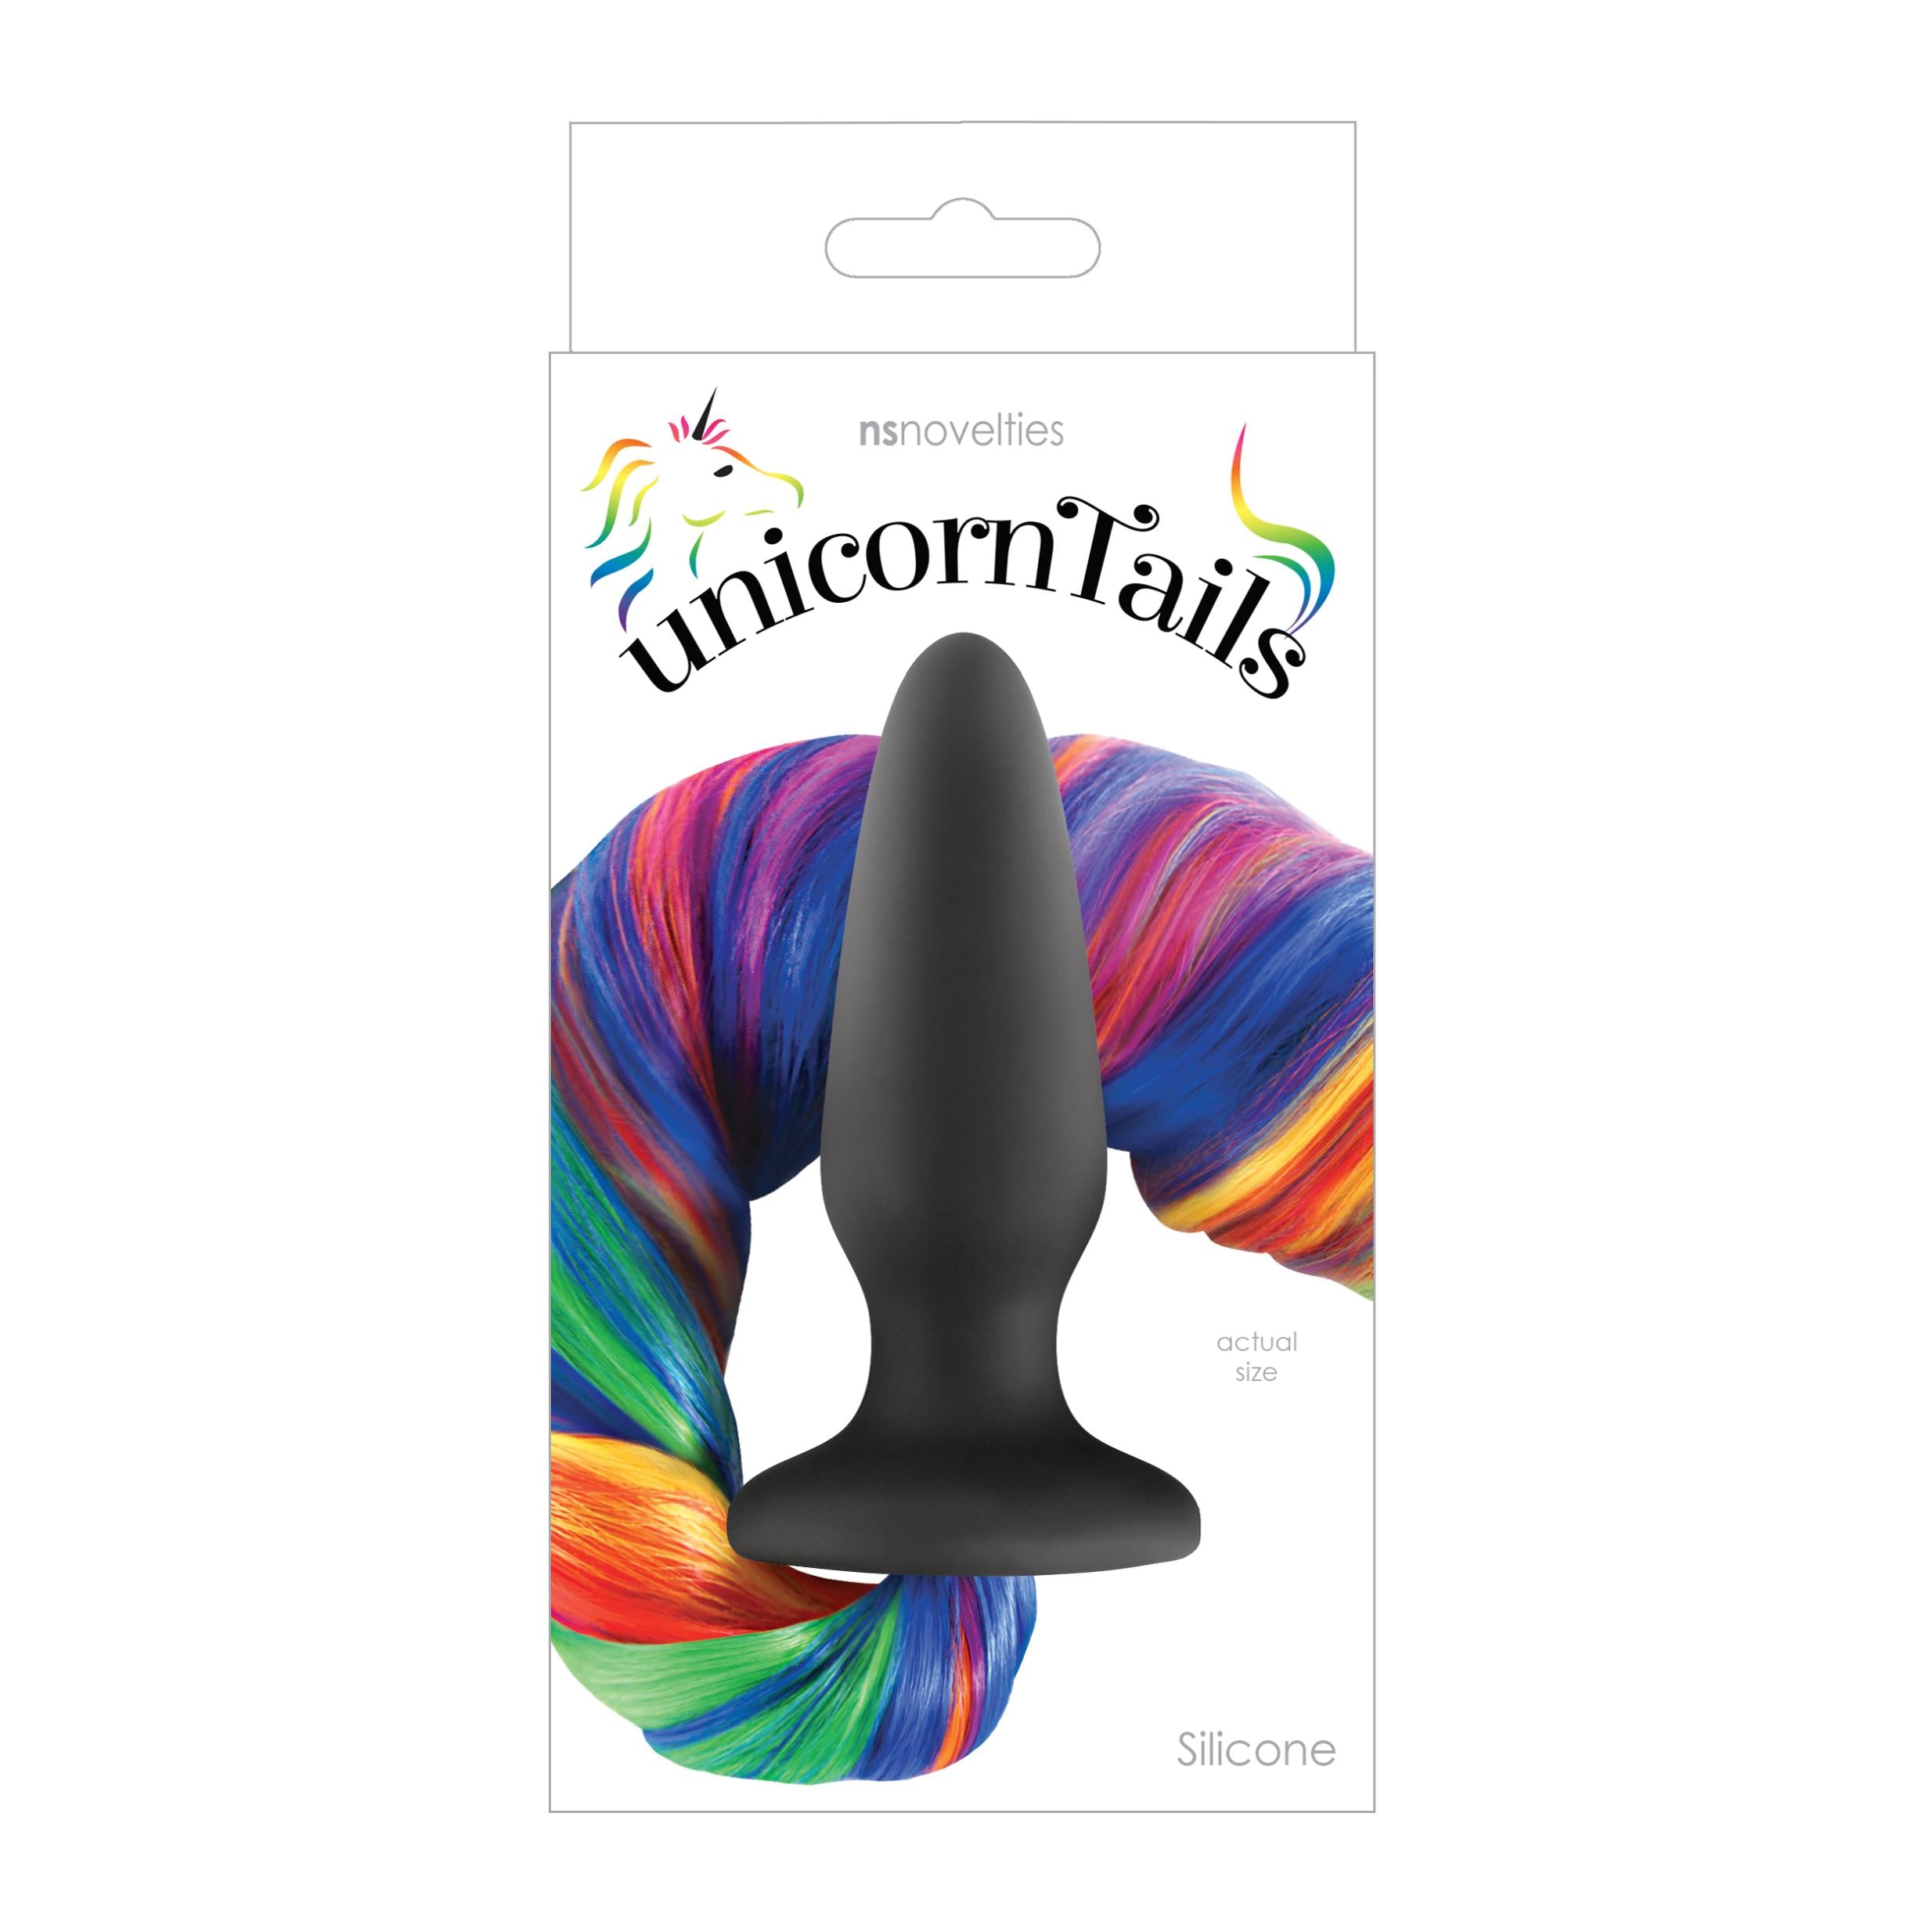 Nsnovelties' Unicorn Tails Anal Plug - Rainbow Rainbow